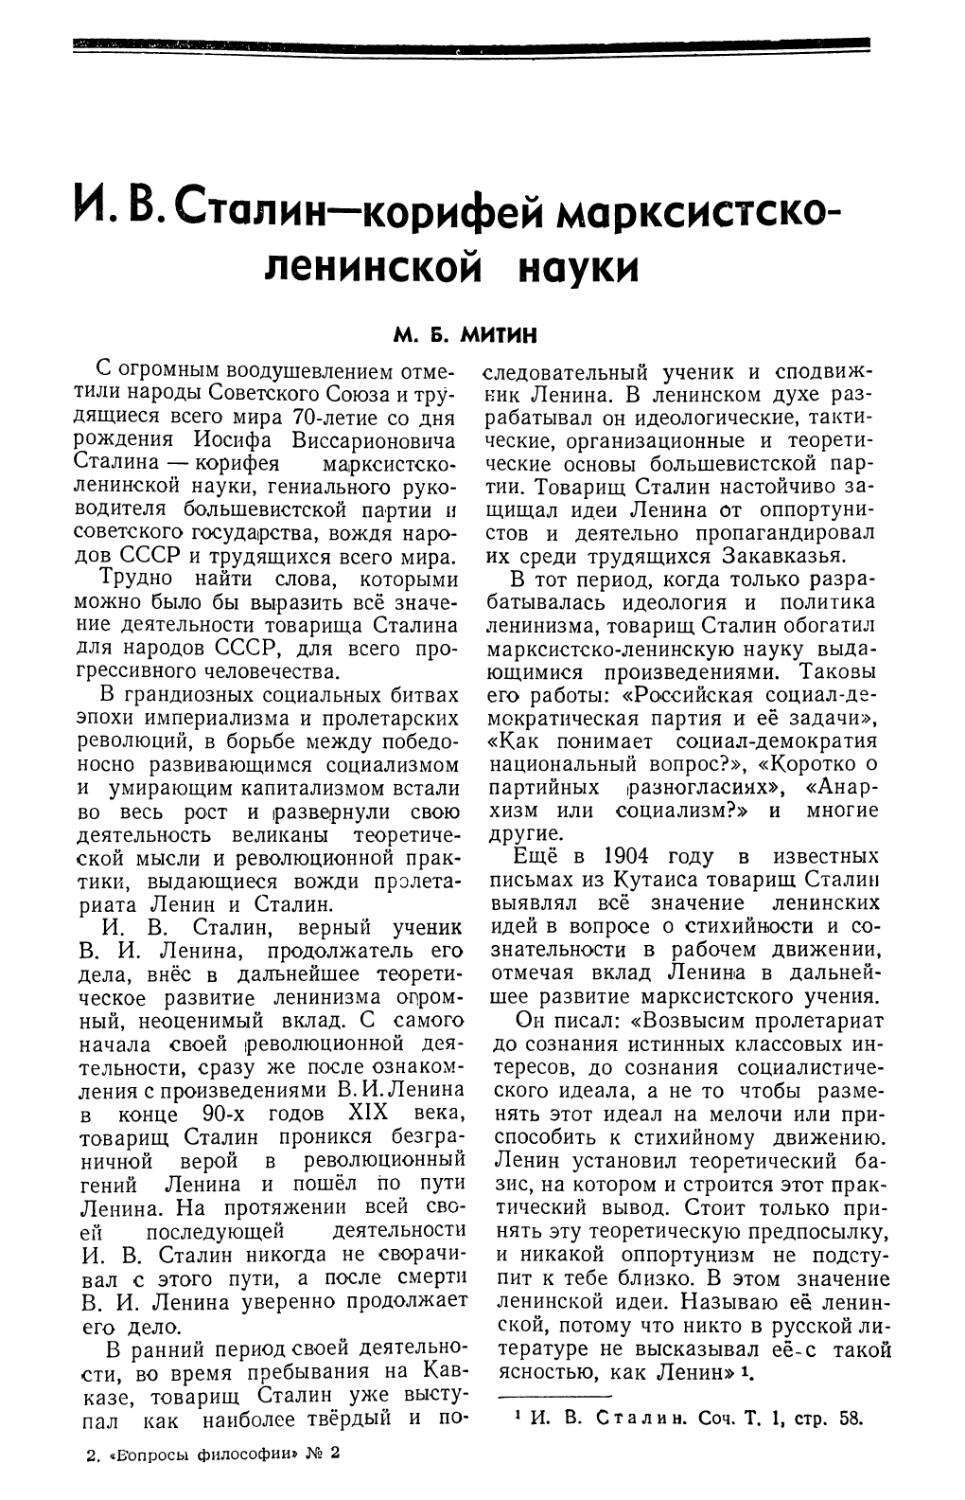 М. Б. Митин — И В. Сталин — корифей марксистско-ленинской науки